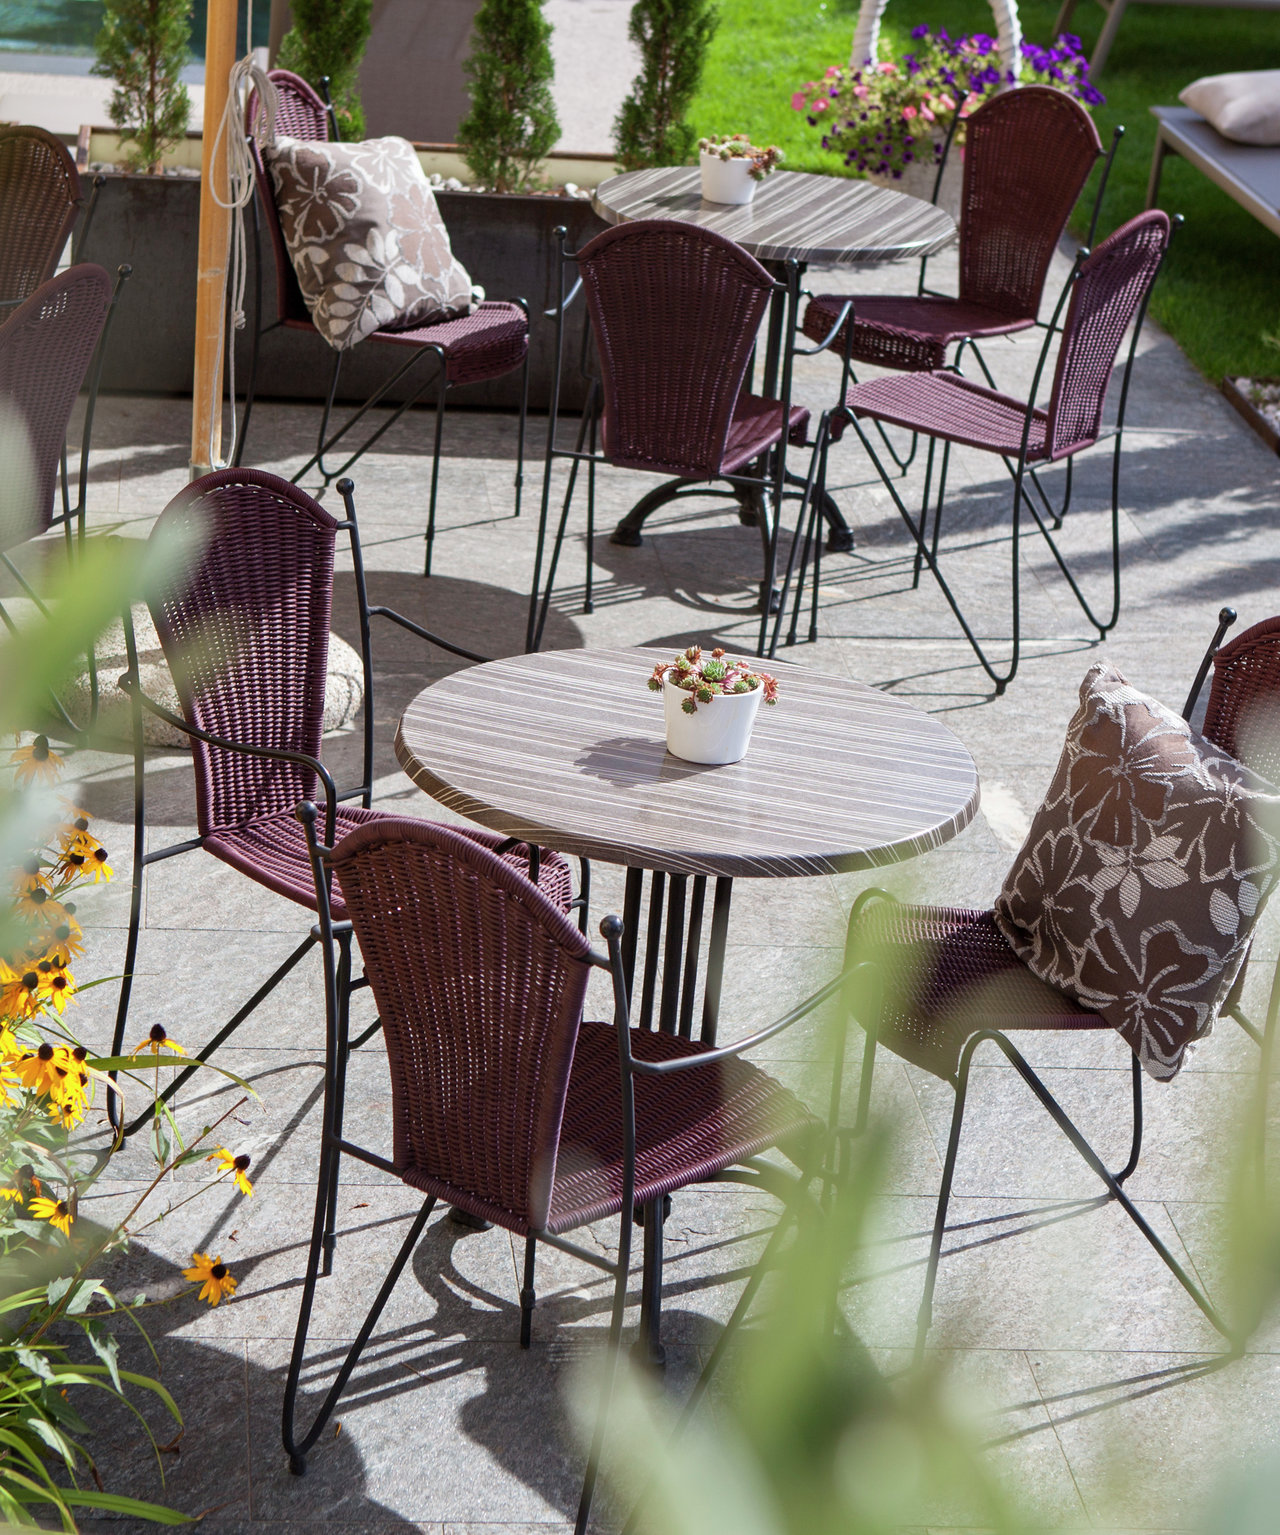 Rilassati e distenditi sulla nostra terrazza con un buon bicchiere di vino o un Aperol Spritz.